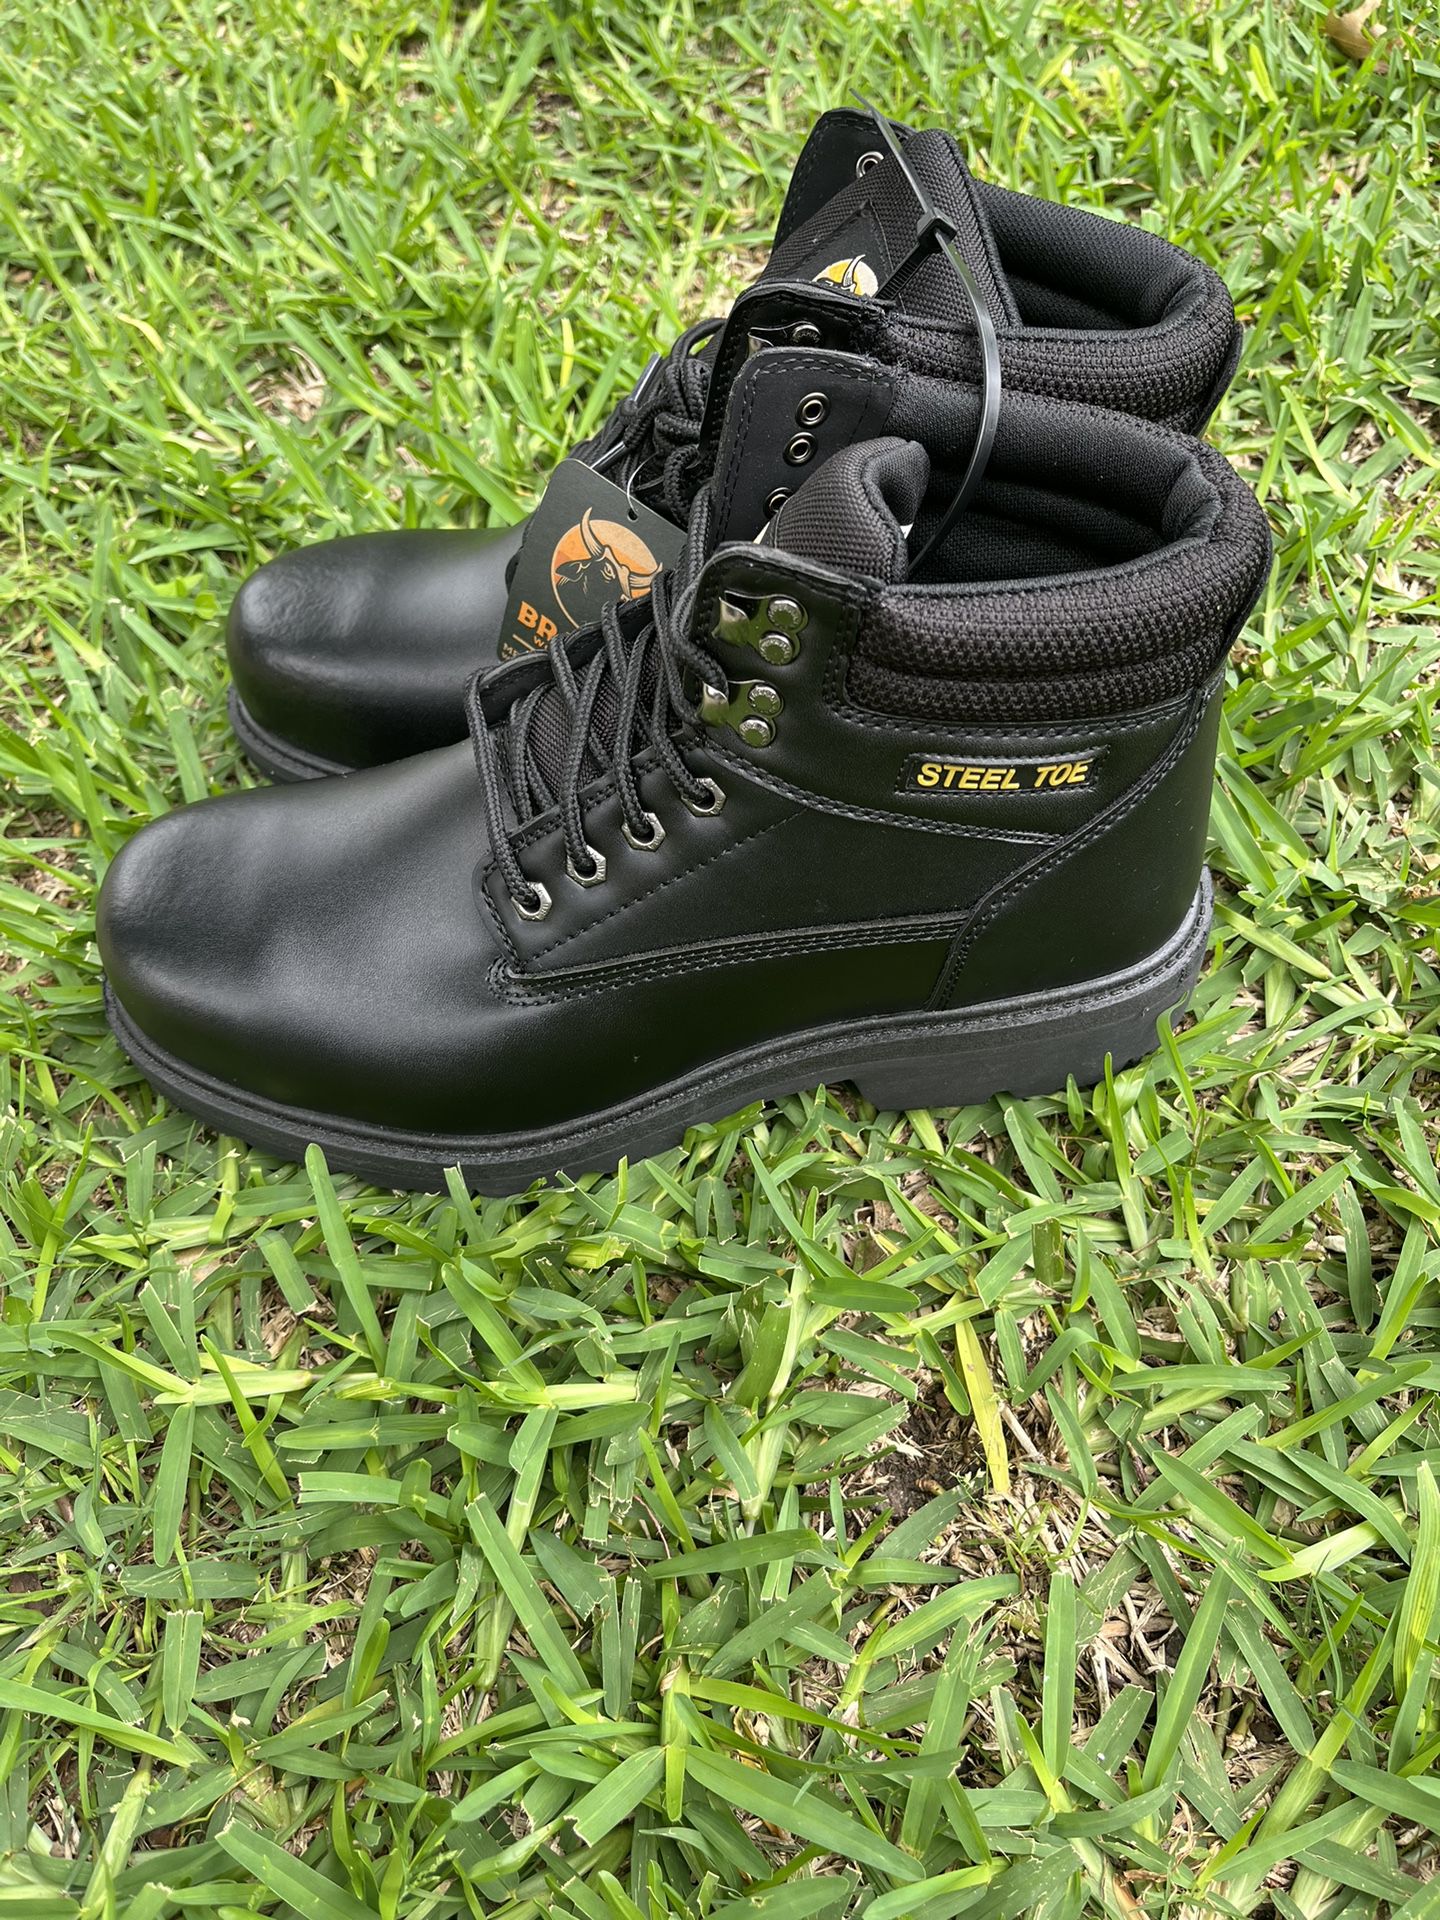 Work boots with iron toe(Botas Para El Trabajo Con Punta De Fierro)Size 12